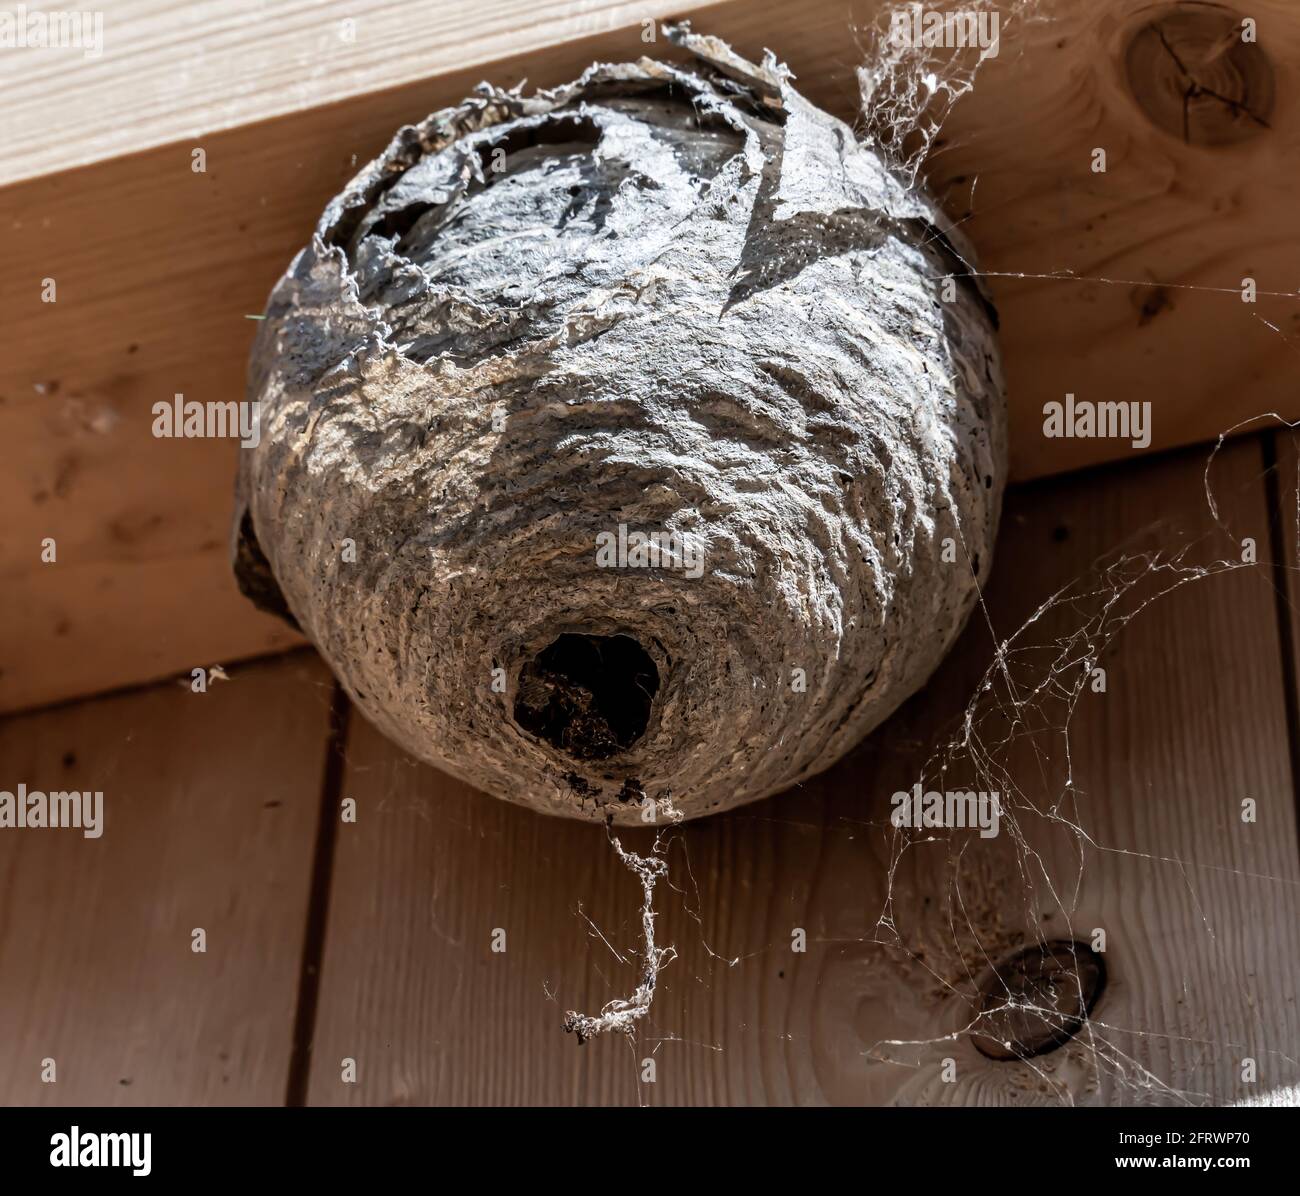 Le vespe Hornet nidificano sul telaio interno di una parete della casa. Lavoro di controllo dei parassiti. Foto Stock